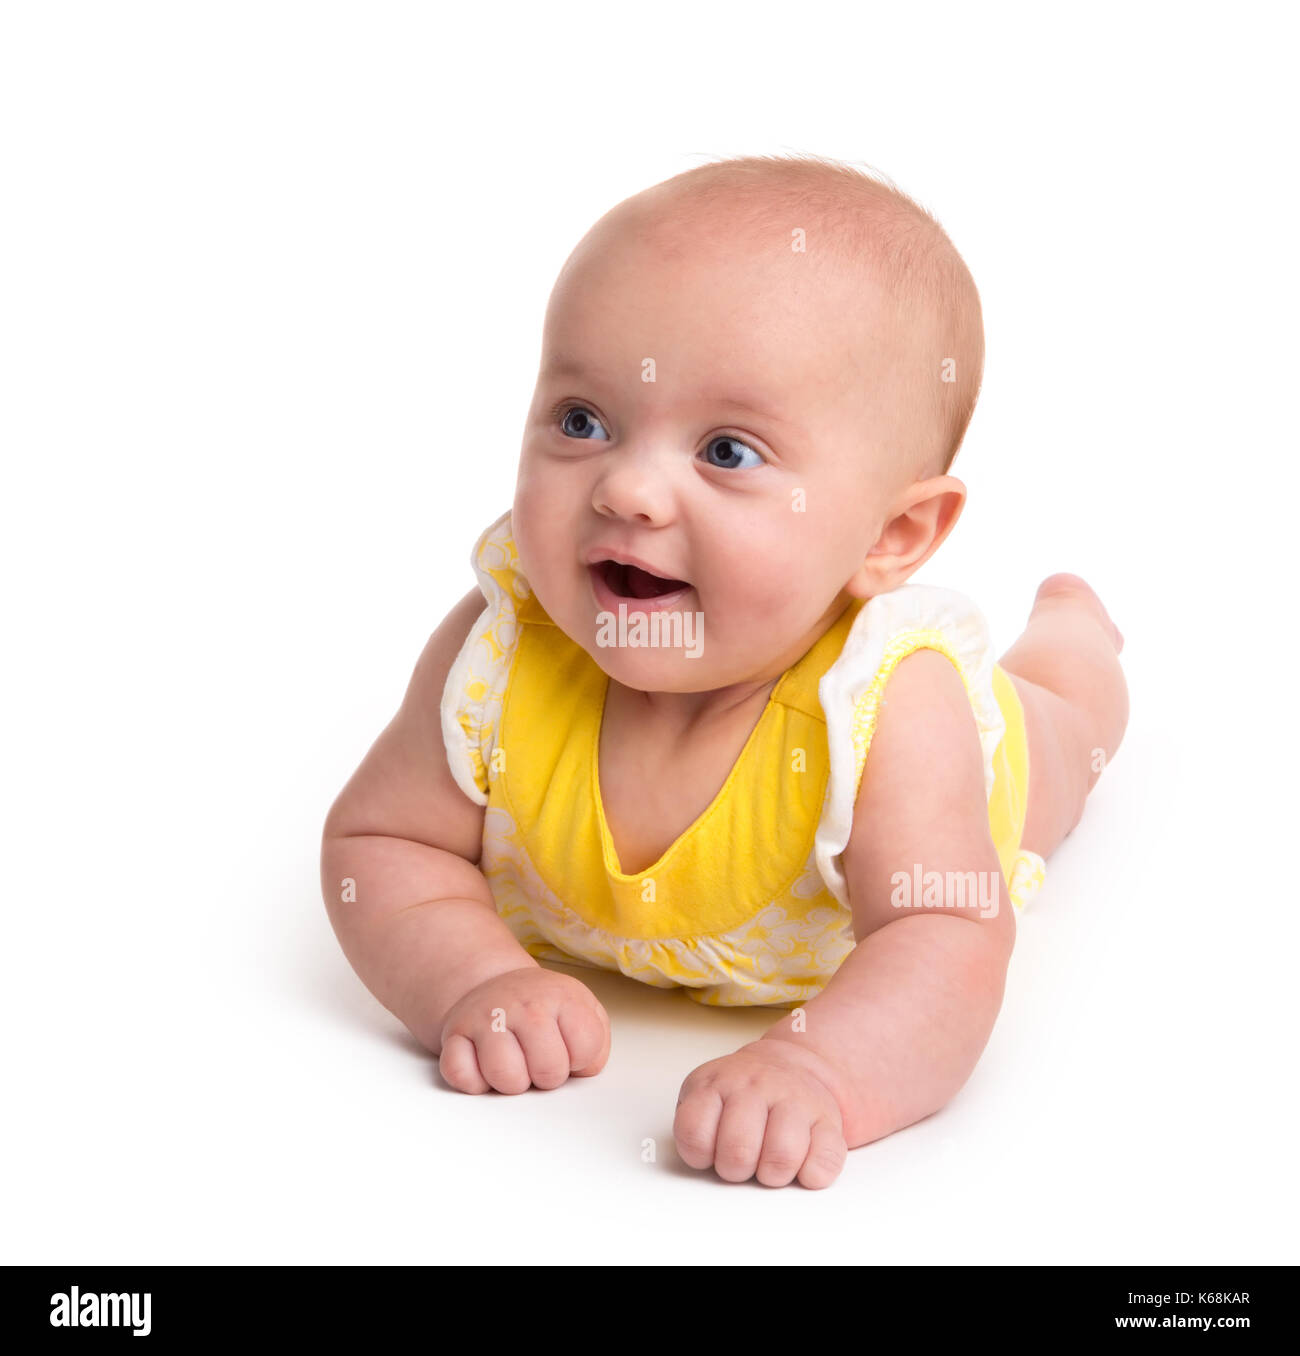 Carino baby sorridente isolati su sfondo bianco Foto Stock